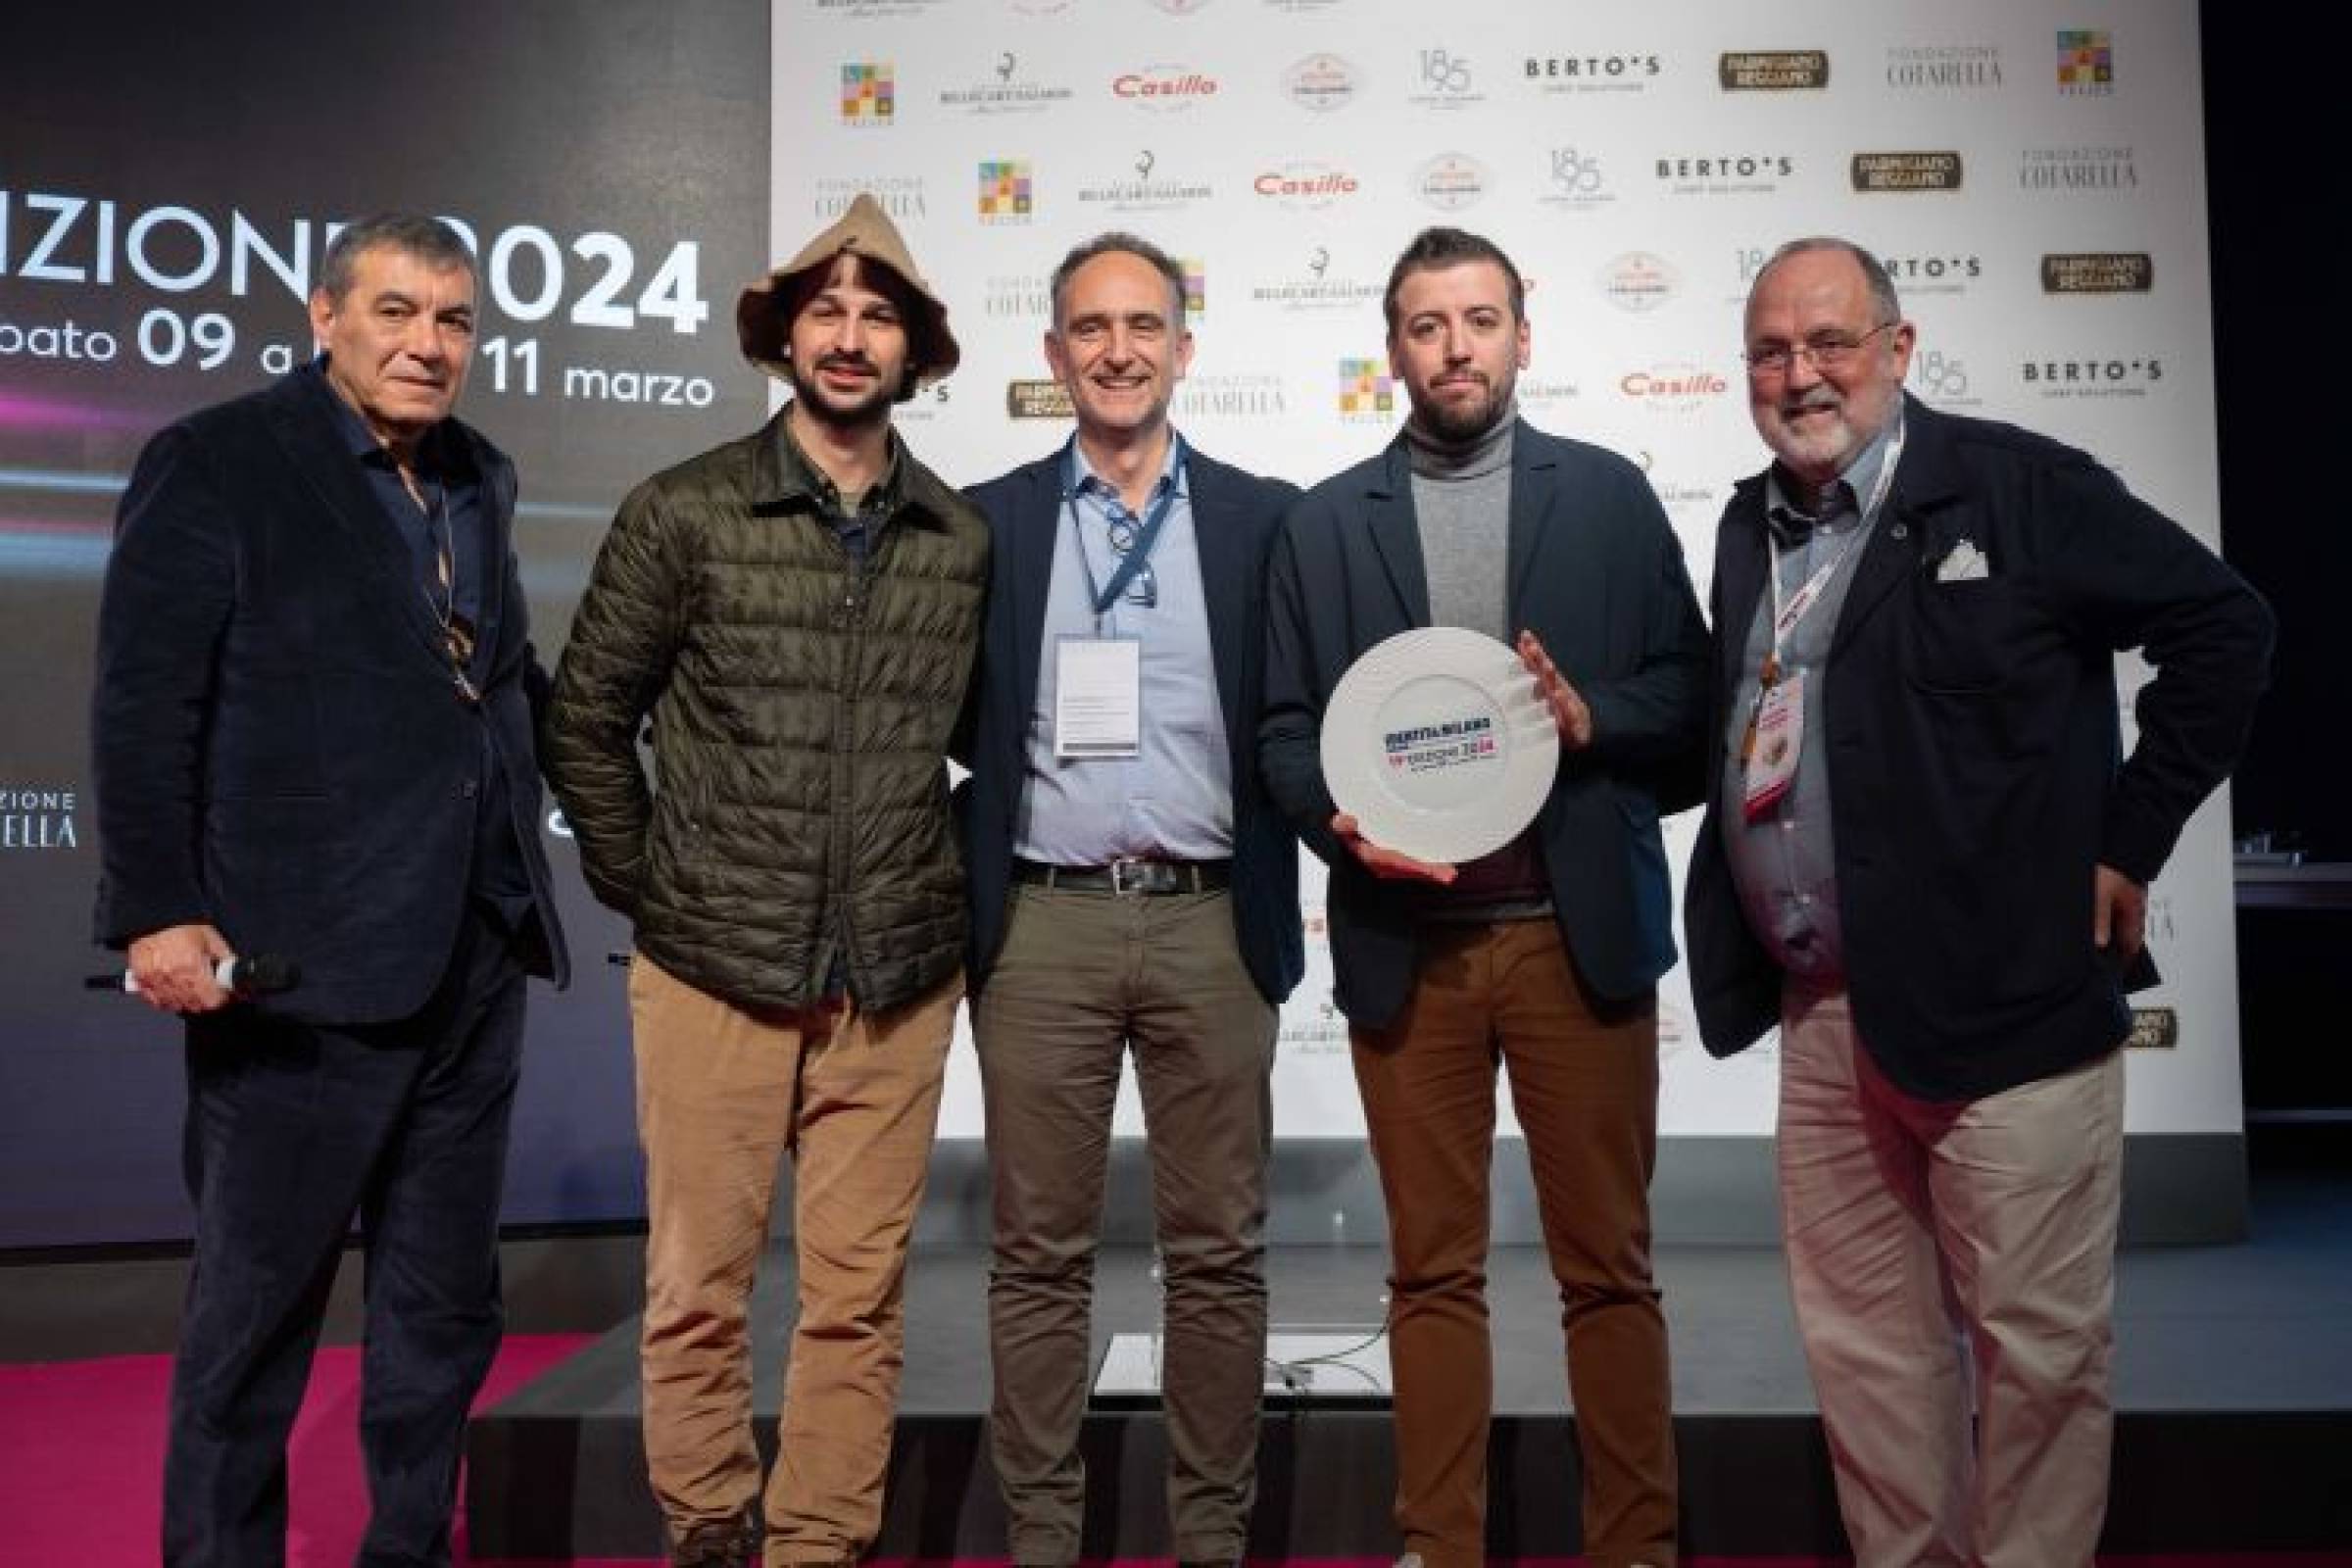 Agriturismo Ferdy ottiene il premio "Eccellenze Italiane" di Identità Golose